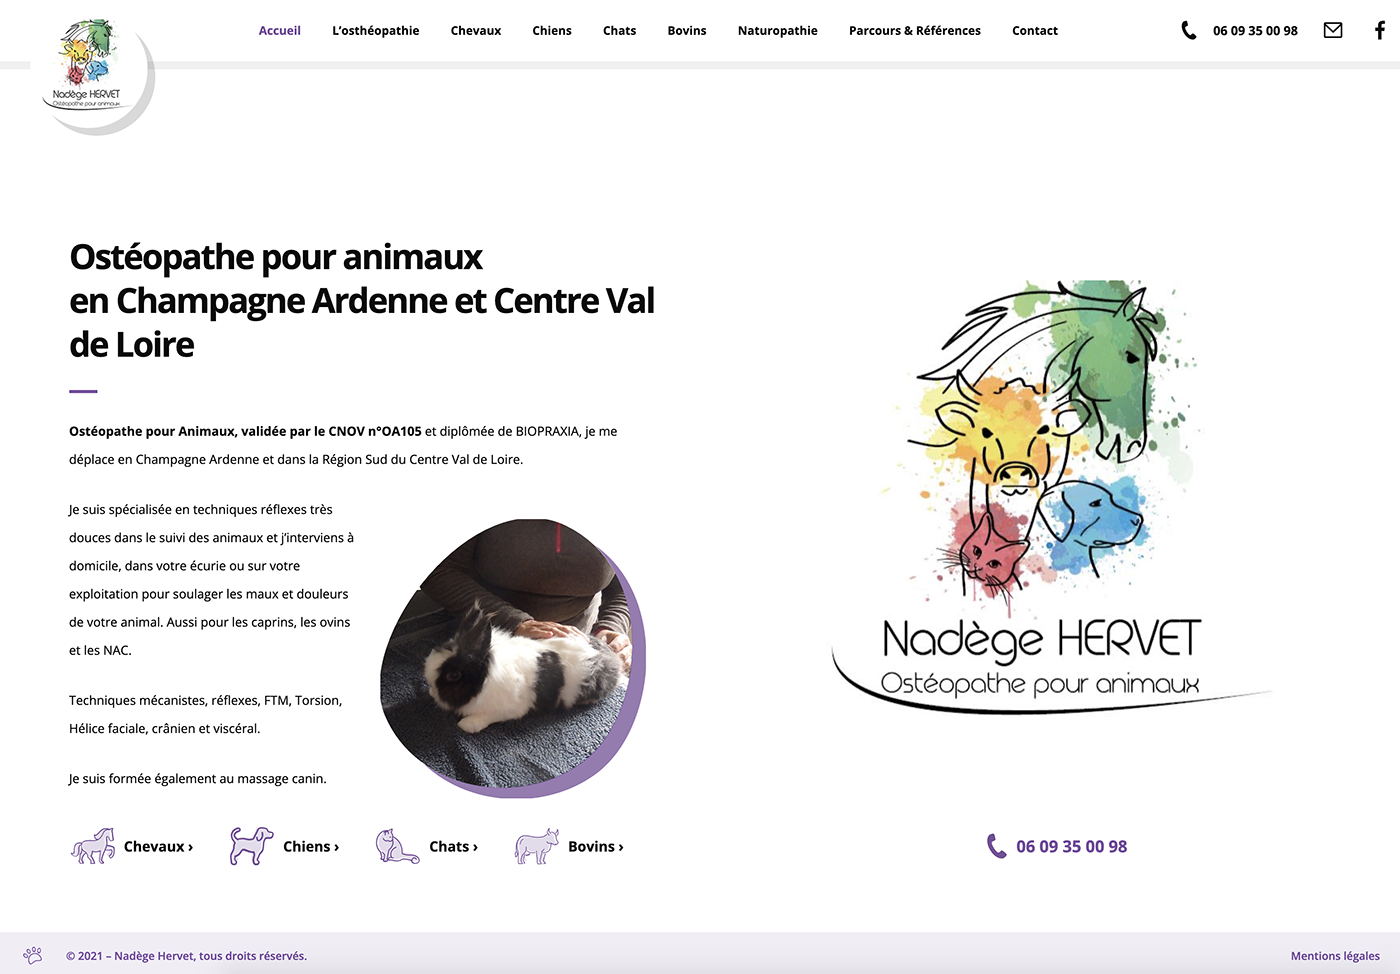 Capture du site internet Nadège Hervet